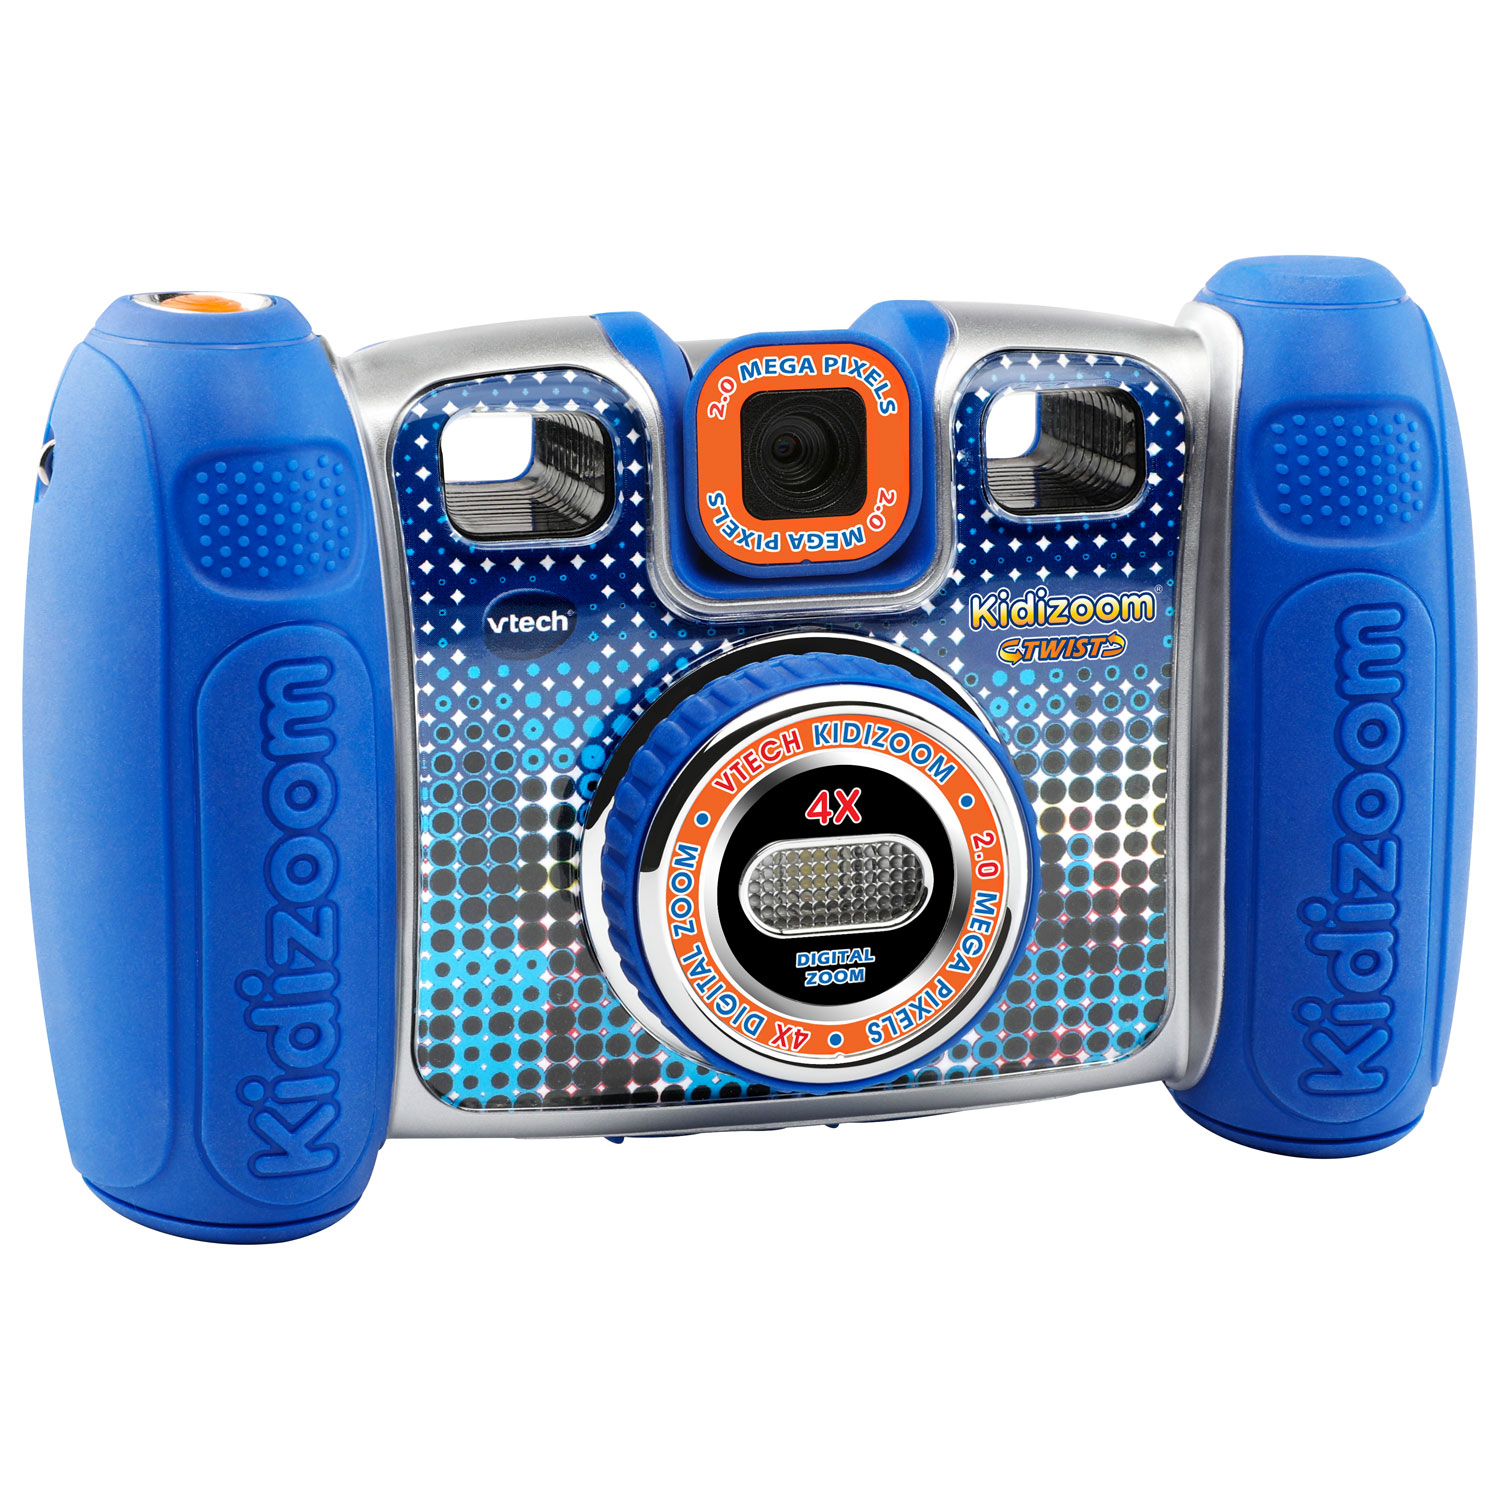 Kidizoom - Caméra numérique avec imprimante